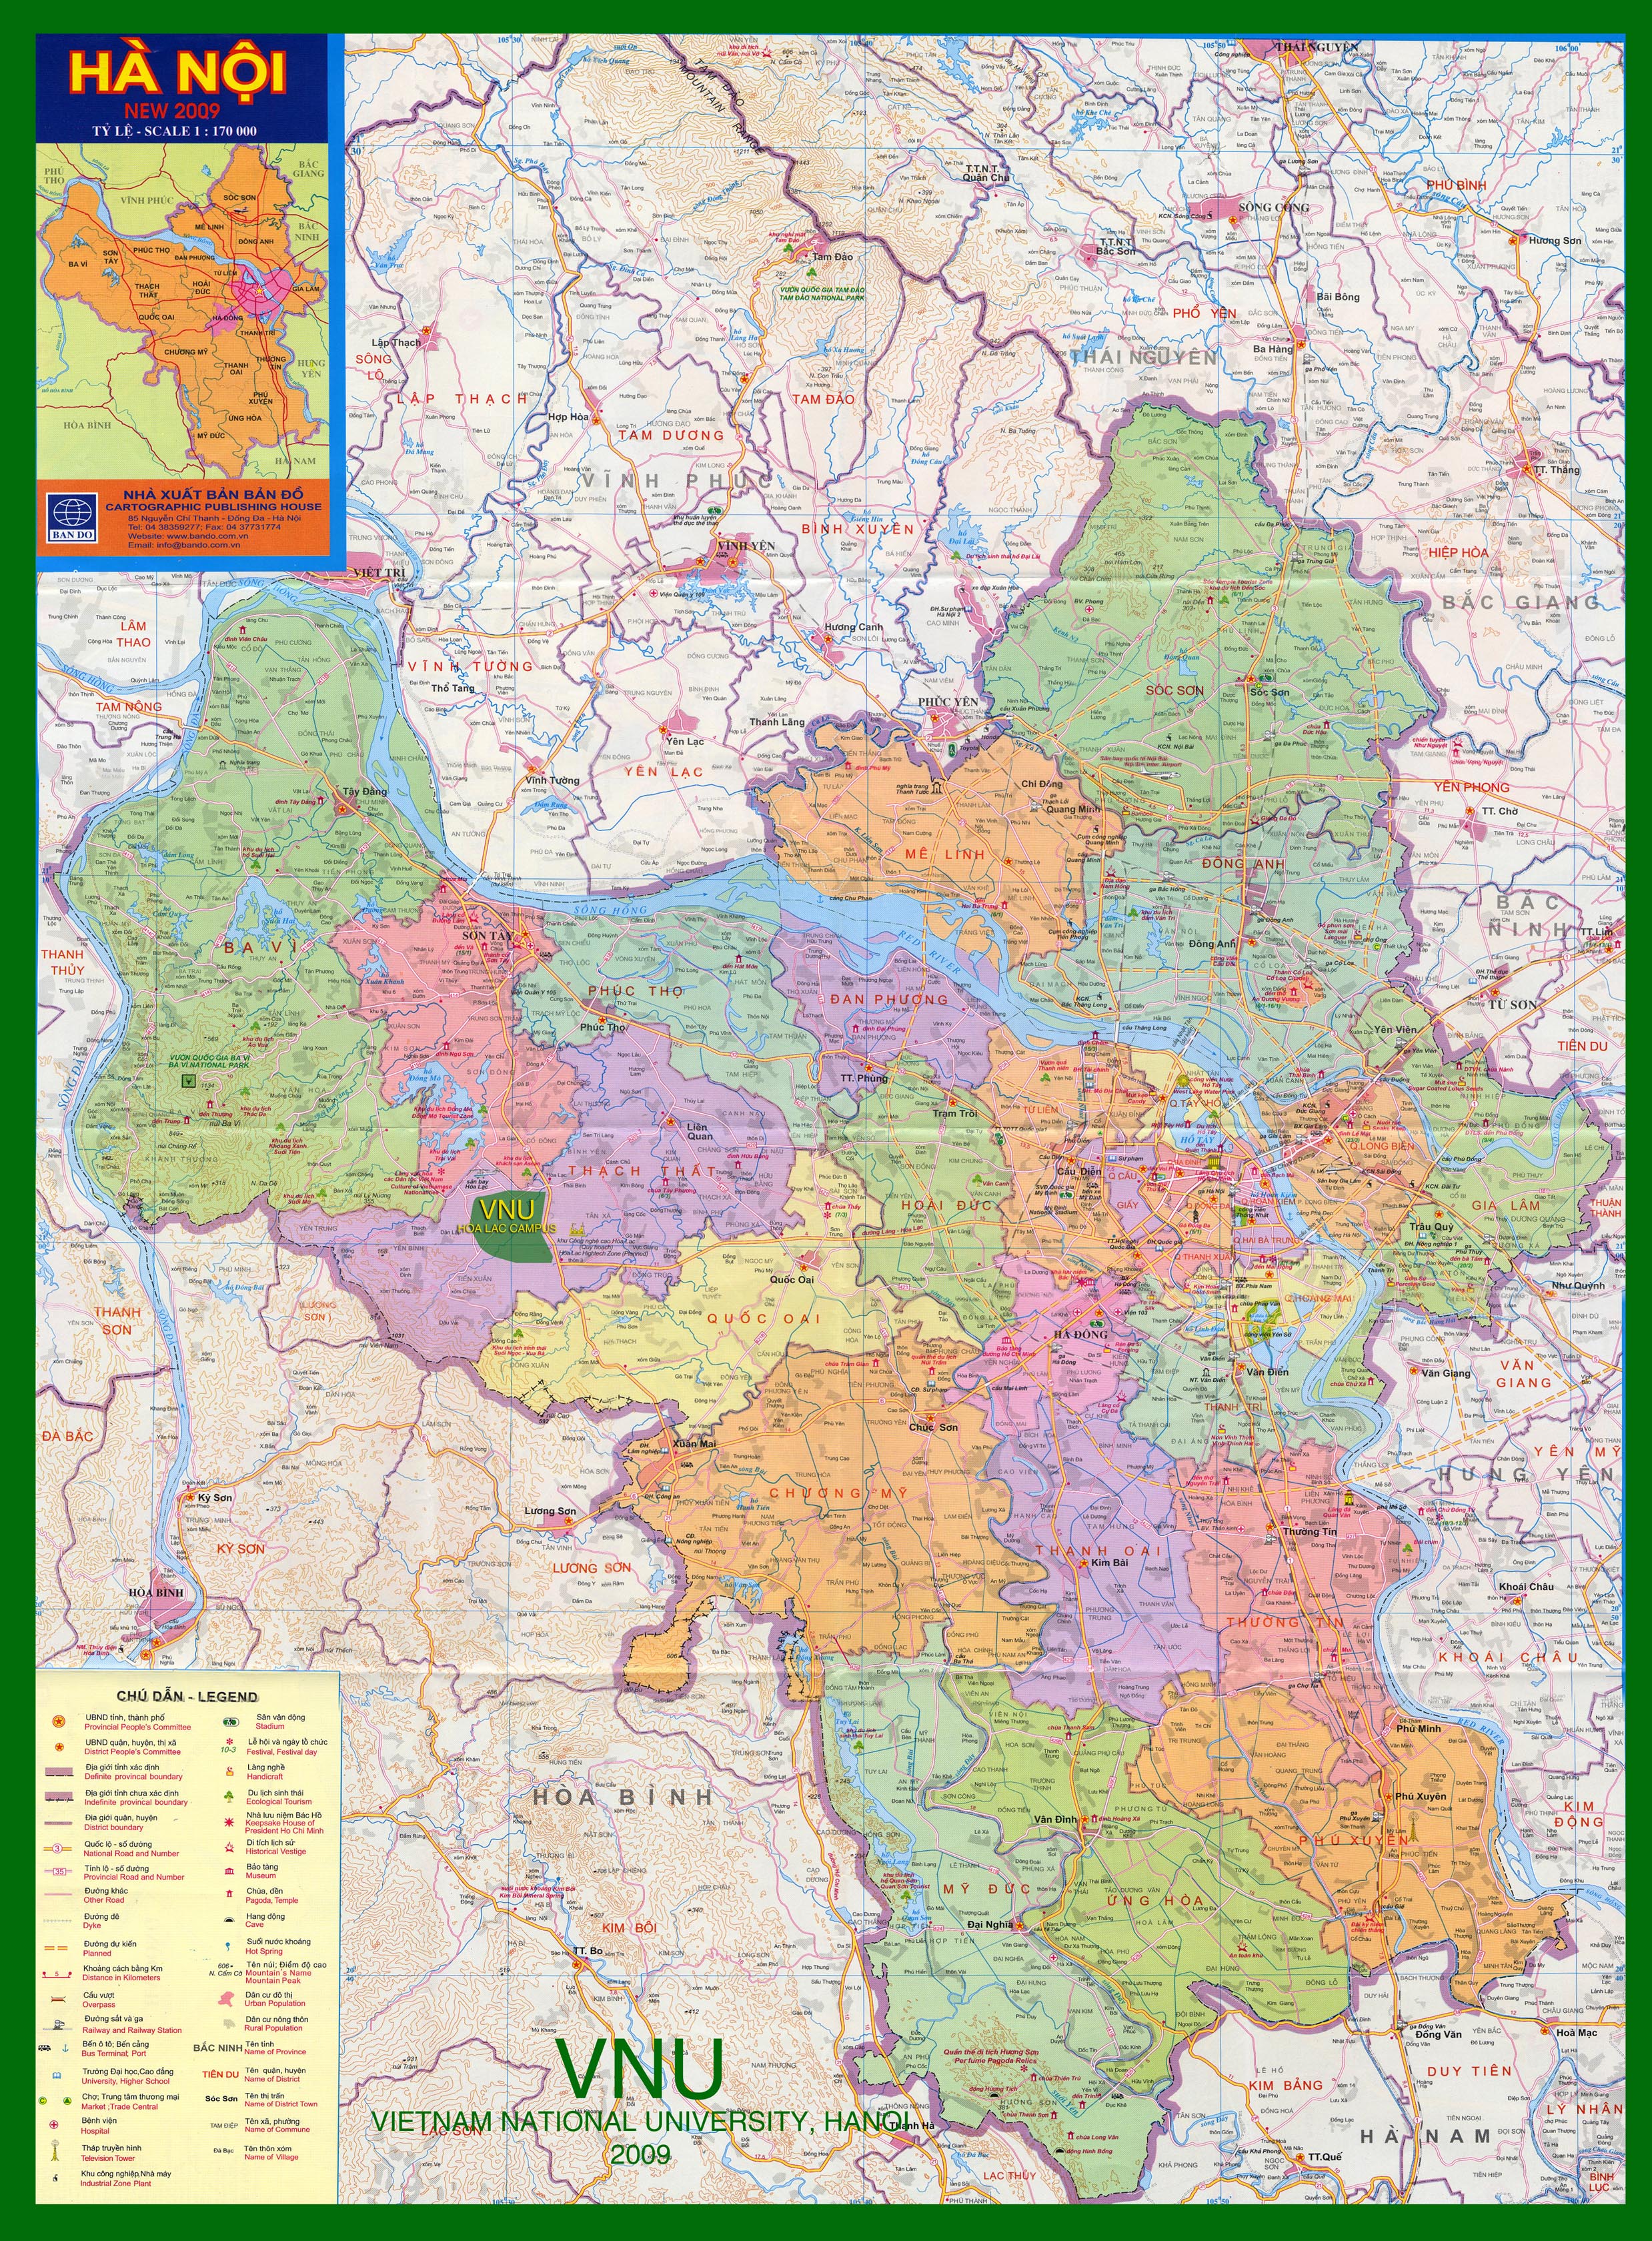 Bản đồ các quận Hà Nội 2024: Điều tra các quận phát triển trong tương lai thông qua bản đồ hàng đầu. Khám phá truyền thống văn hóa và những địa điểm thú vị. Các hướng dẫn viên sẽ giúp bạn biết thêm về quá trình phát triển và quy hoạch để tạo ra một Hà Nội mới!